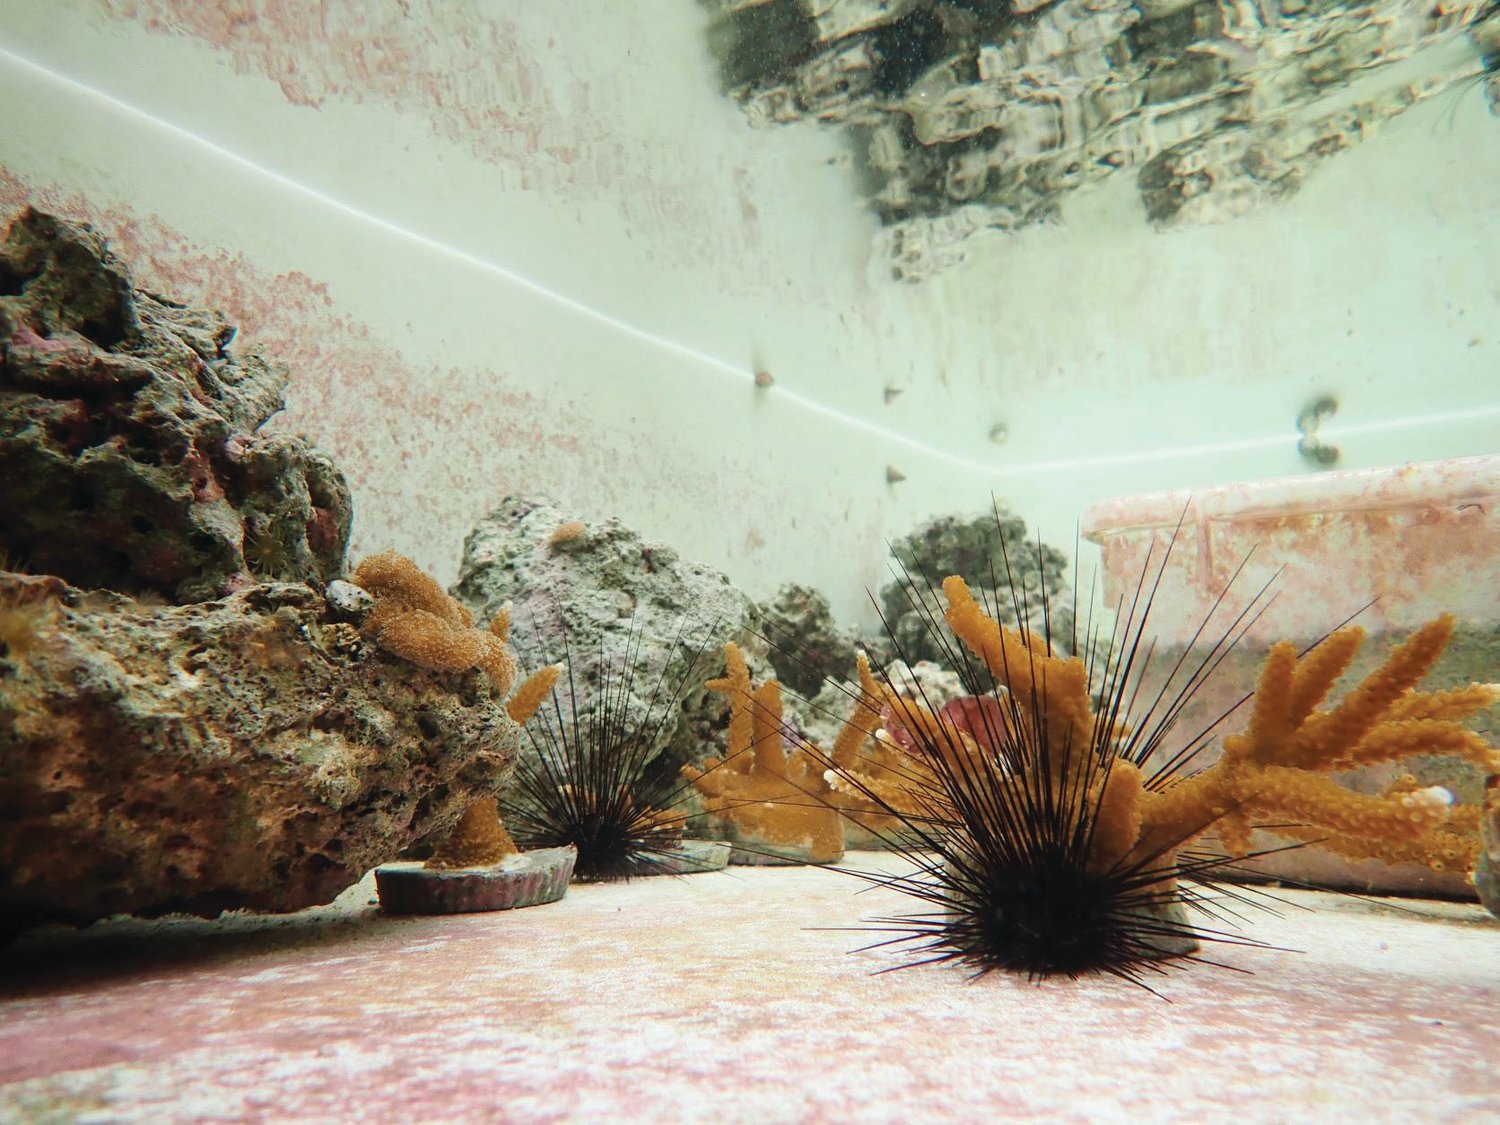 This photo shows a sea urchin.